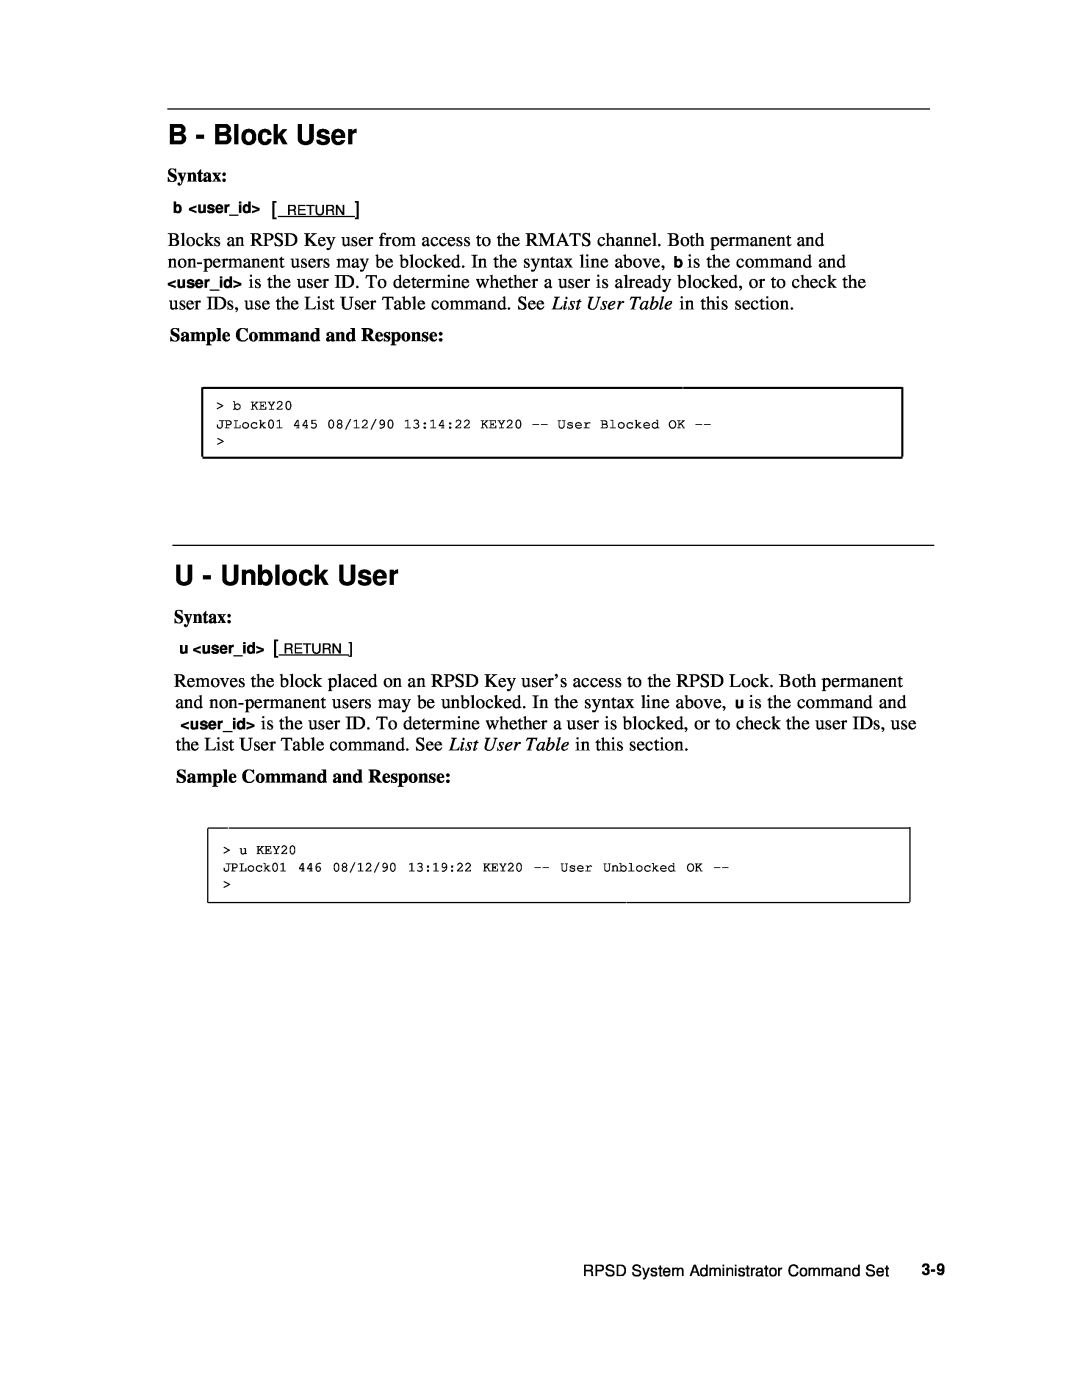 AT&T Remote Port Security Device user manual B - Block User, U - Unblock User, b userid RETURN, u userid RETURN 